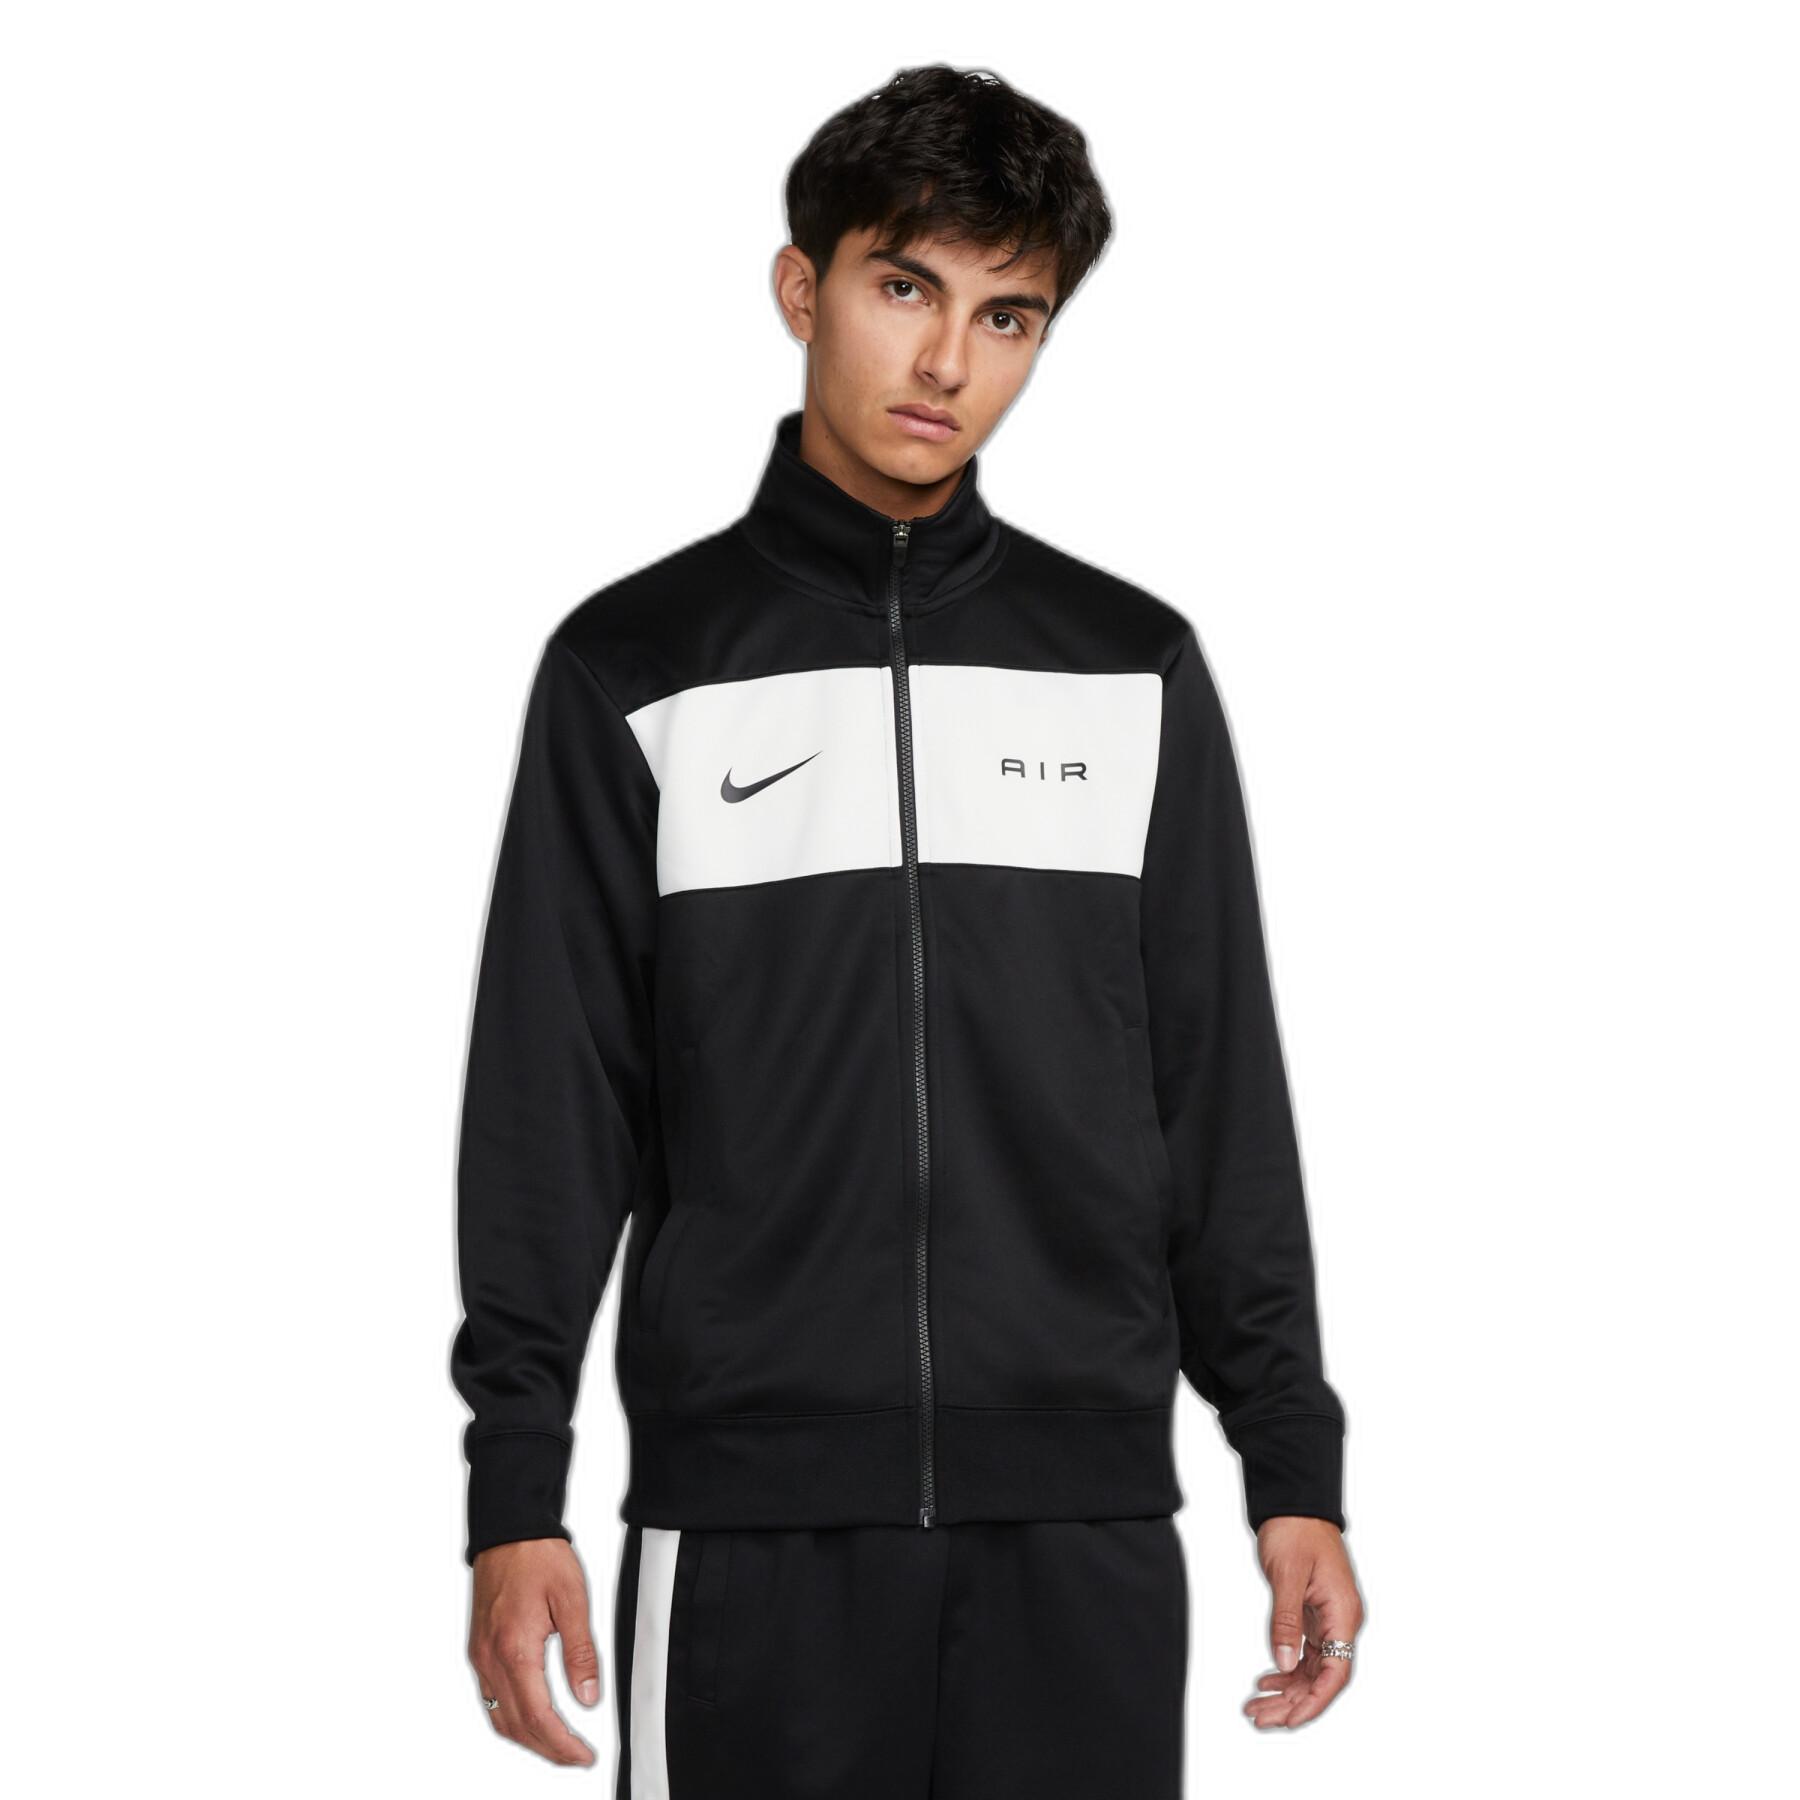 Waterproof jacket Nike Air PK